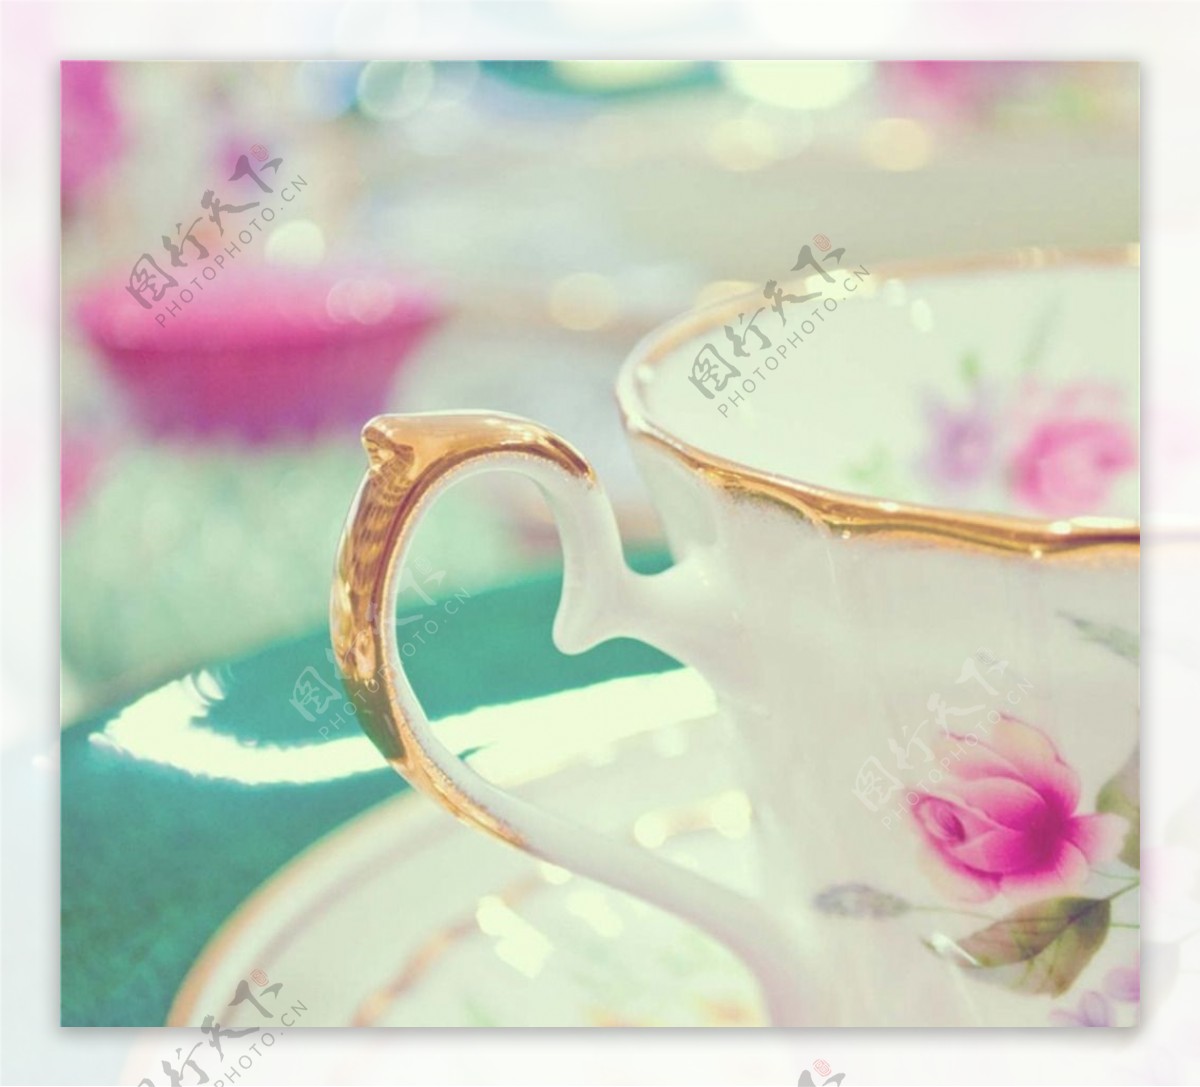 茶道tea茶杯图片